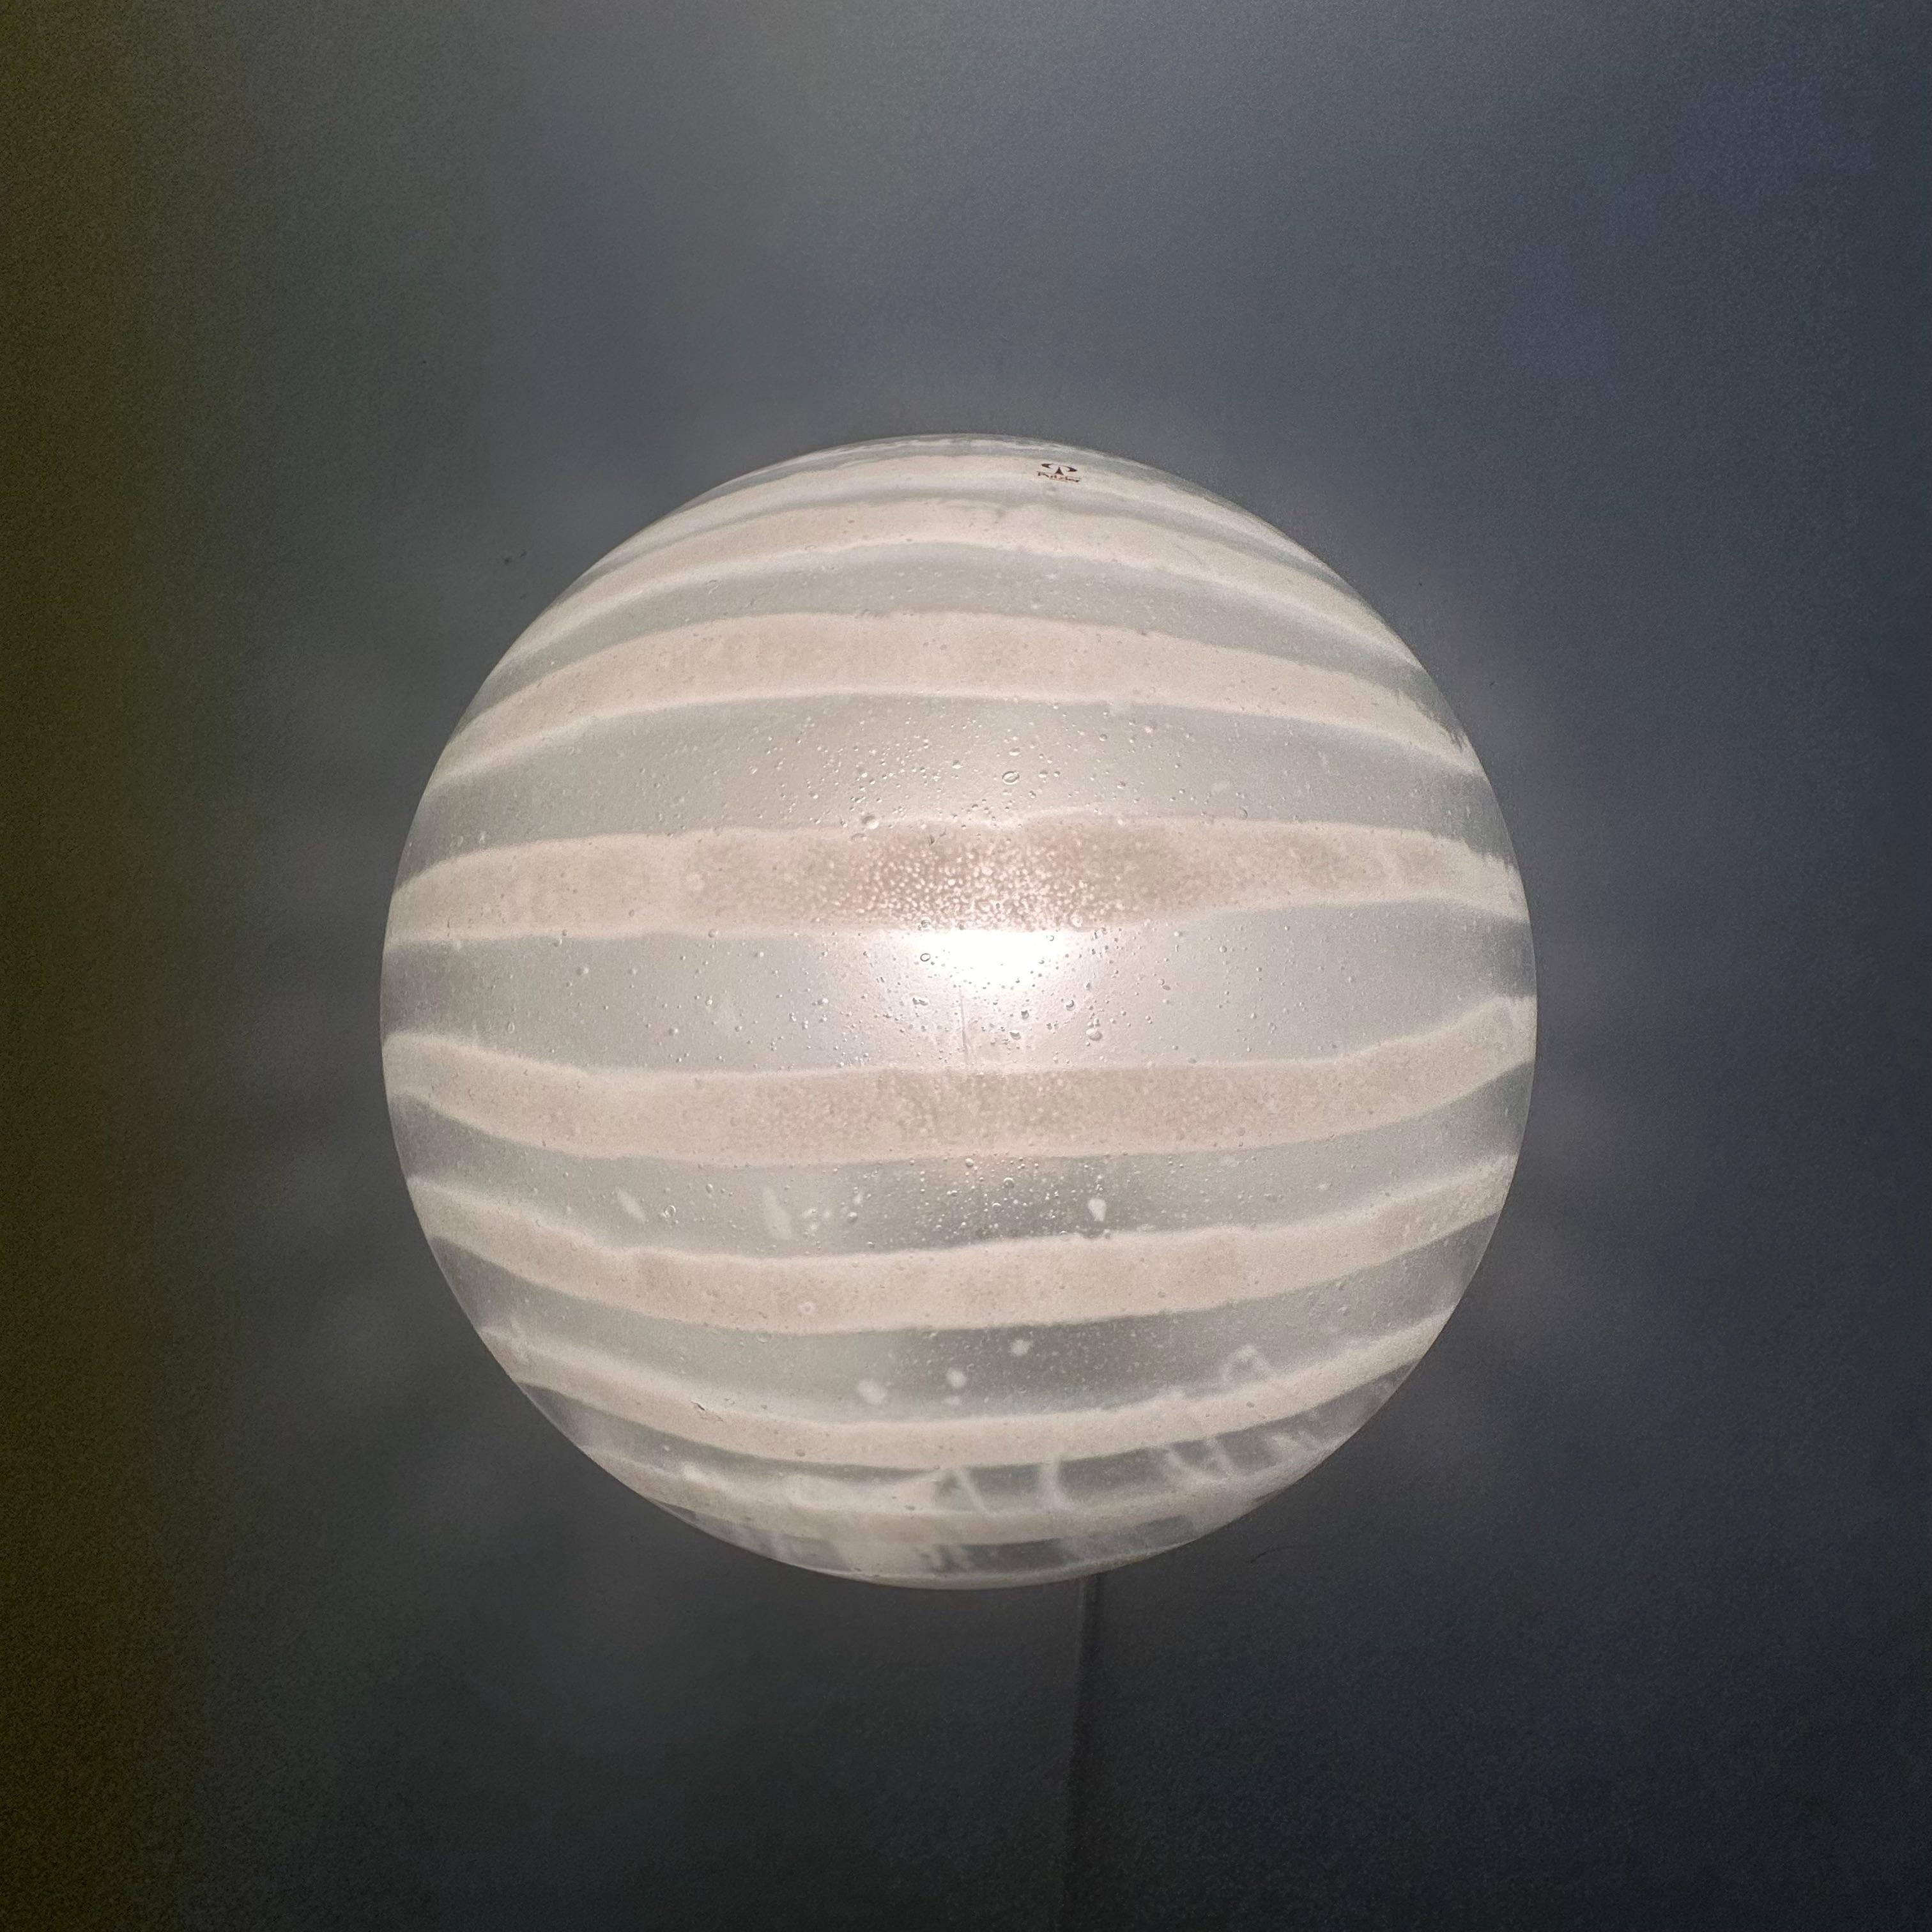 Peil & Putzler lampe murale / encastrée en verre 'zebra' , 1970 Allemagne
Dimensions : 28 cm de diamètre, 13 cm de hauteur
Condit : Nouveau dans la boîte
Période : 1970's
MATERIAL : Verre, métal